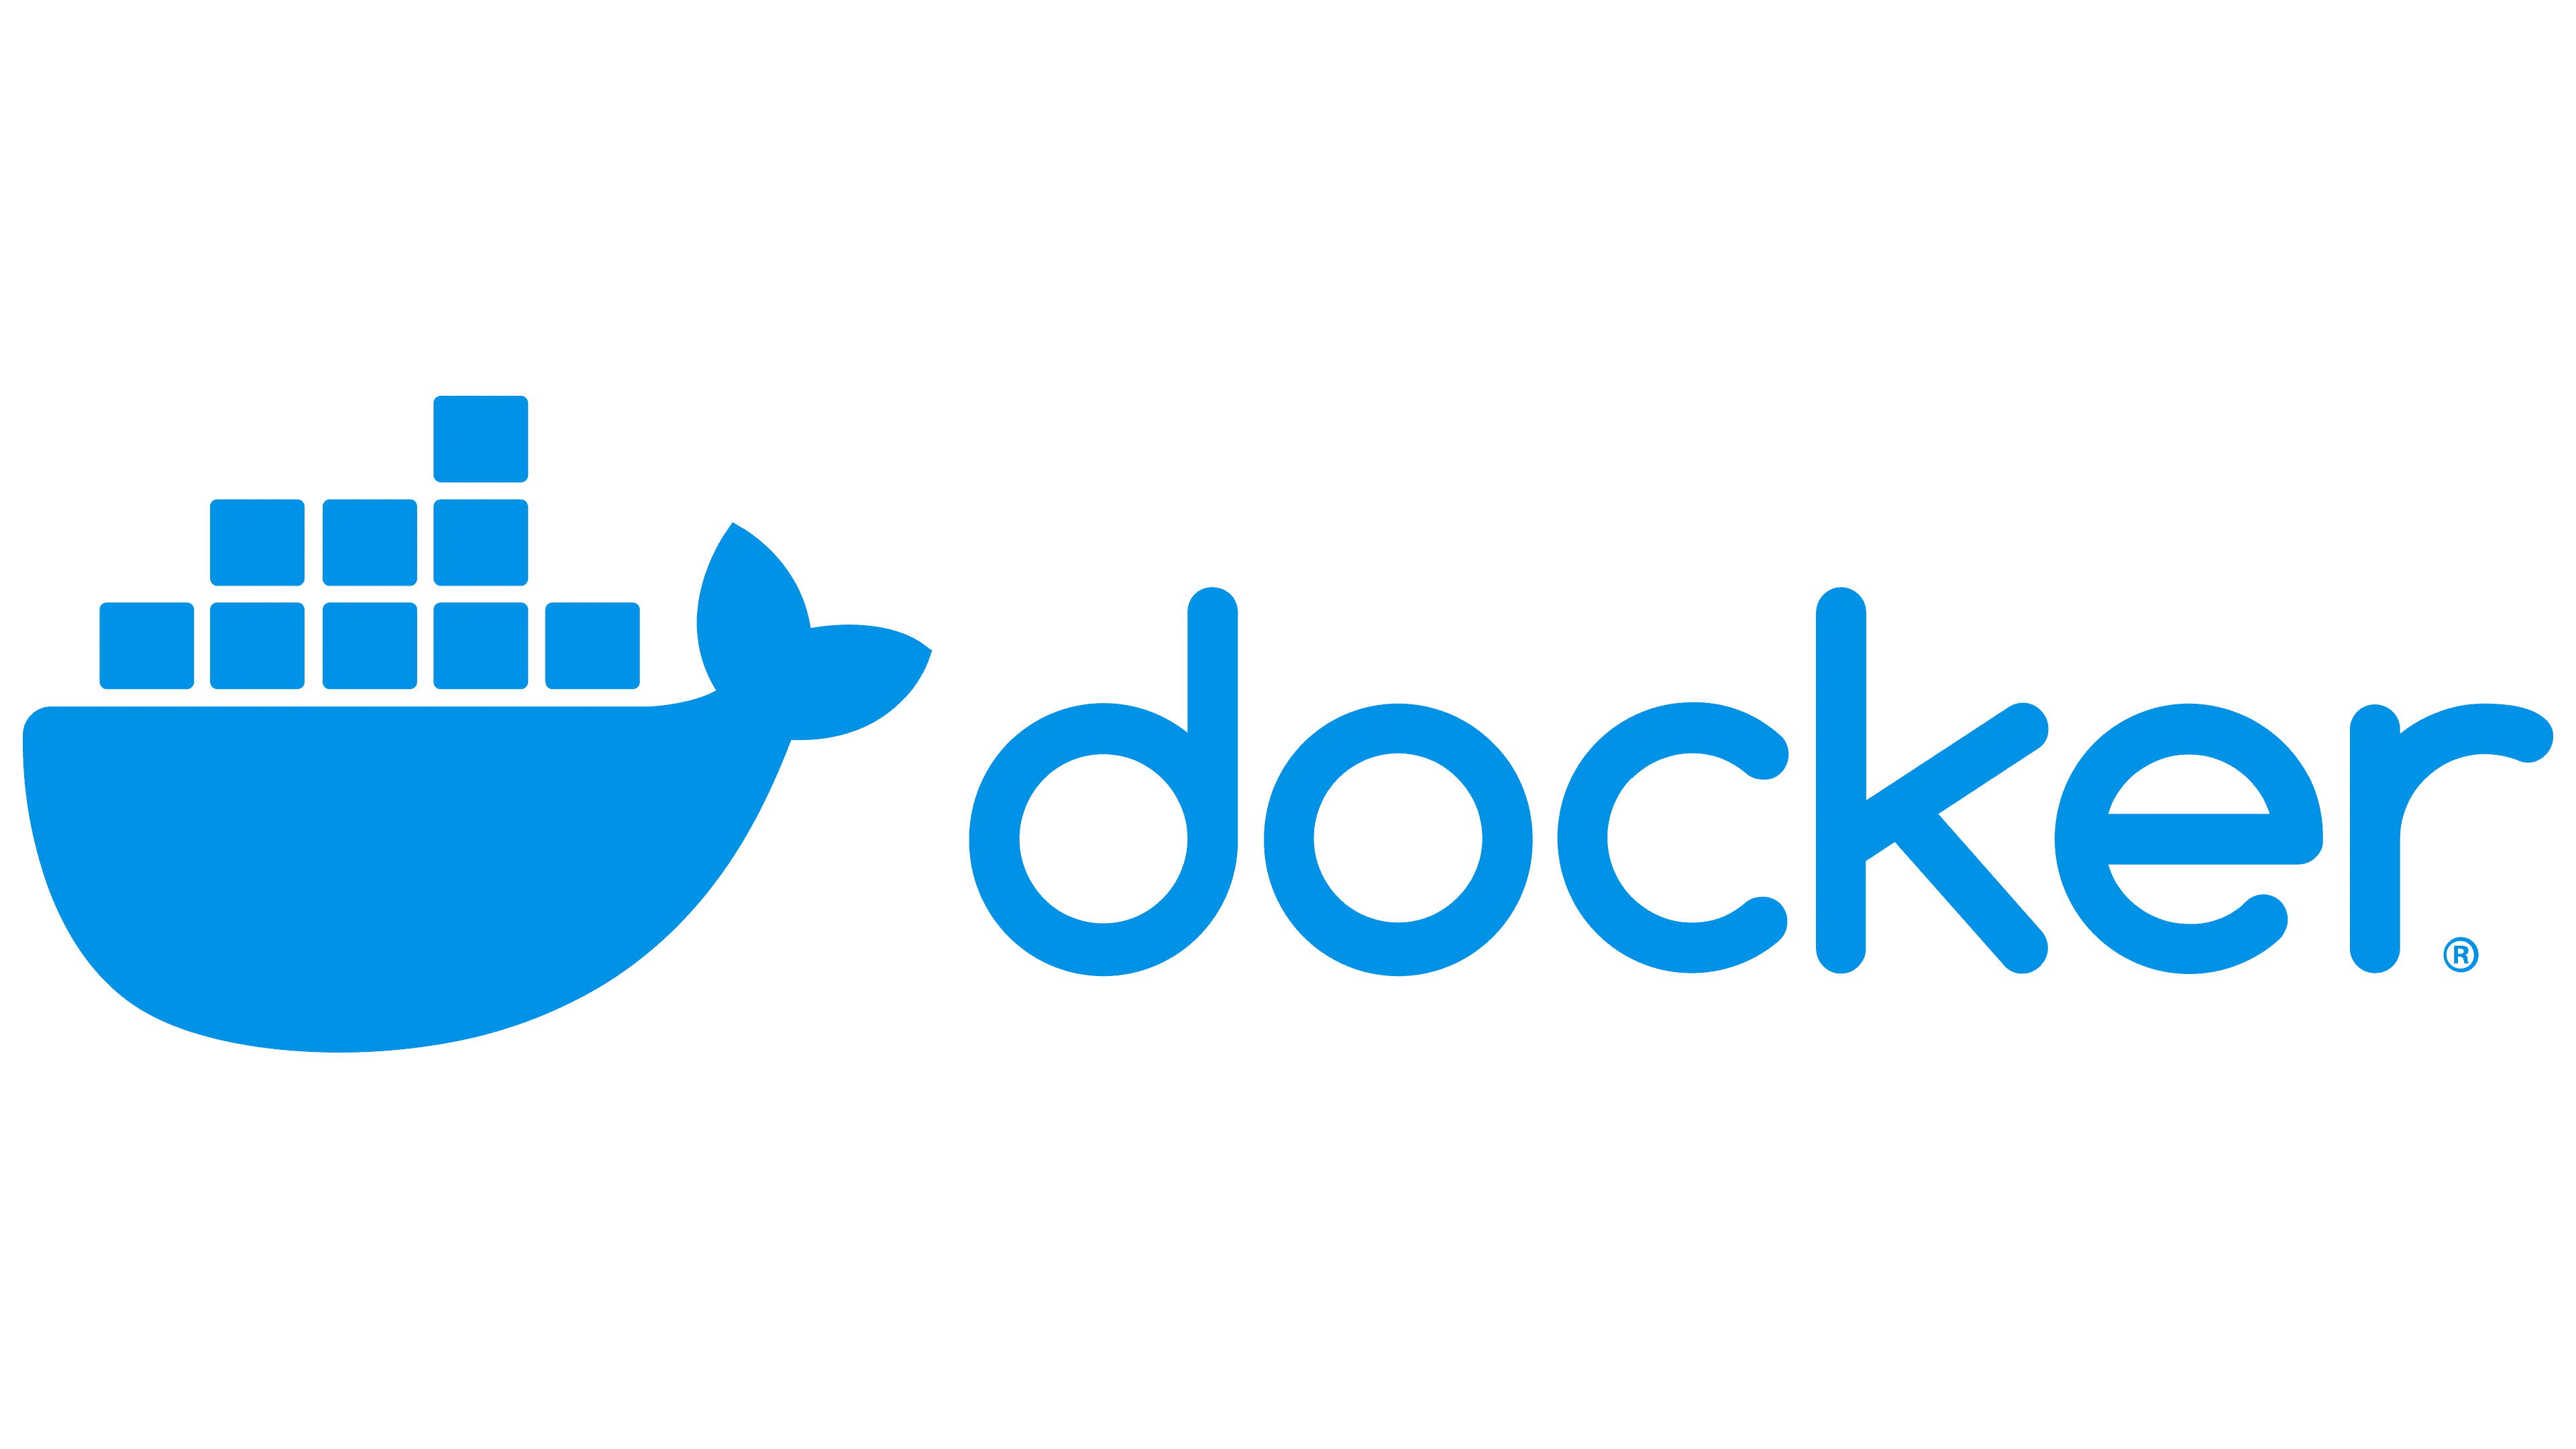 【Docker】初学者 Docker 基础操作指南：从拉取镜像到运行、停止、删除容器